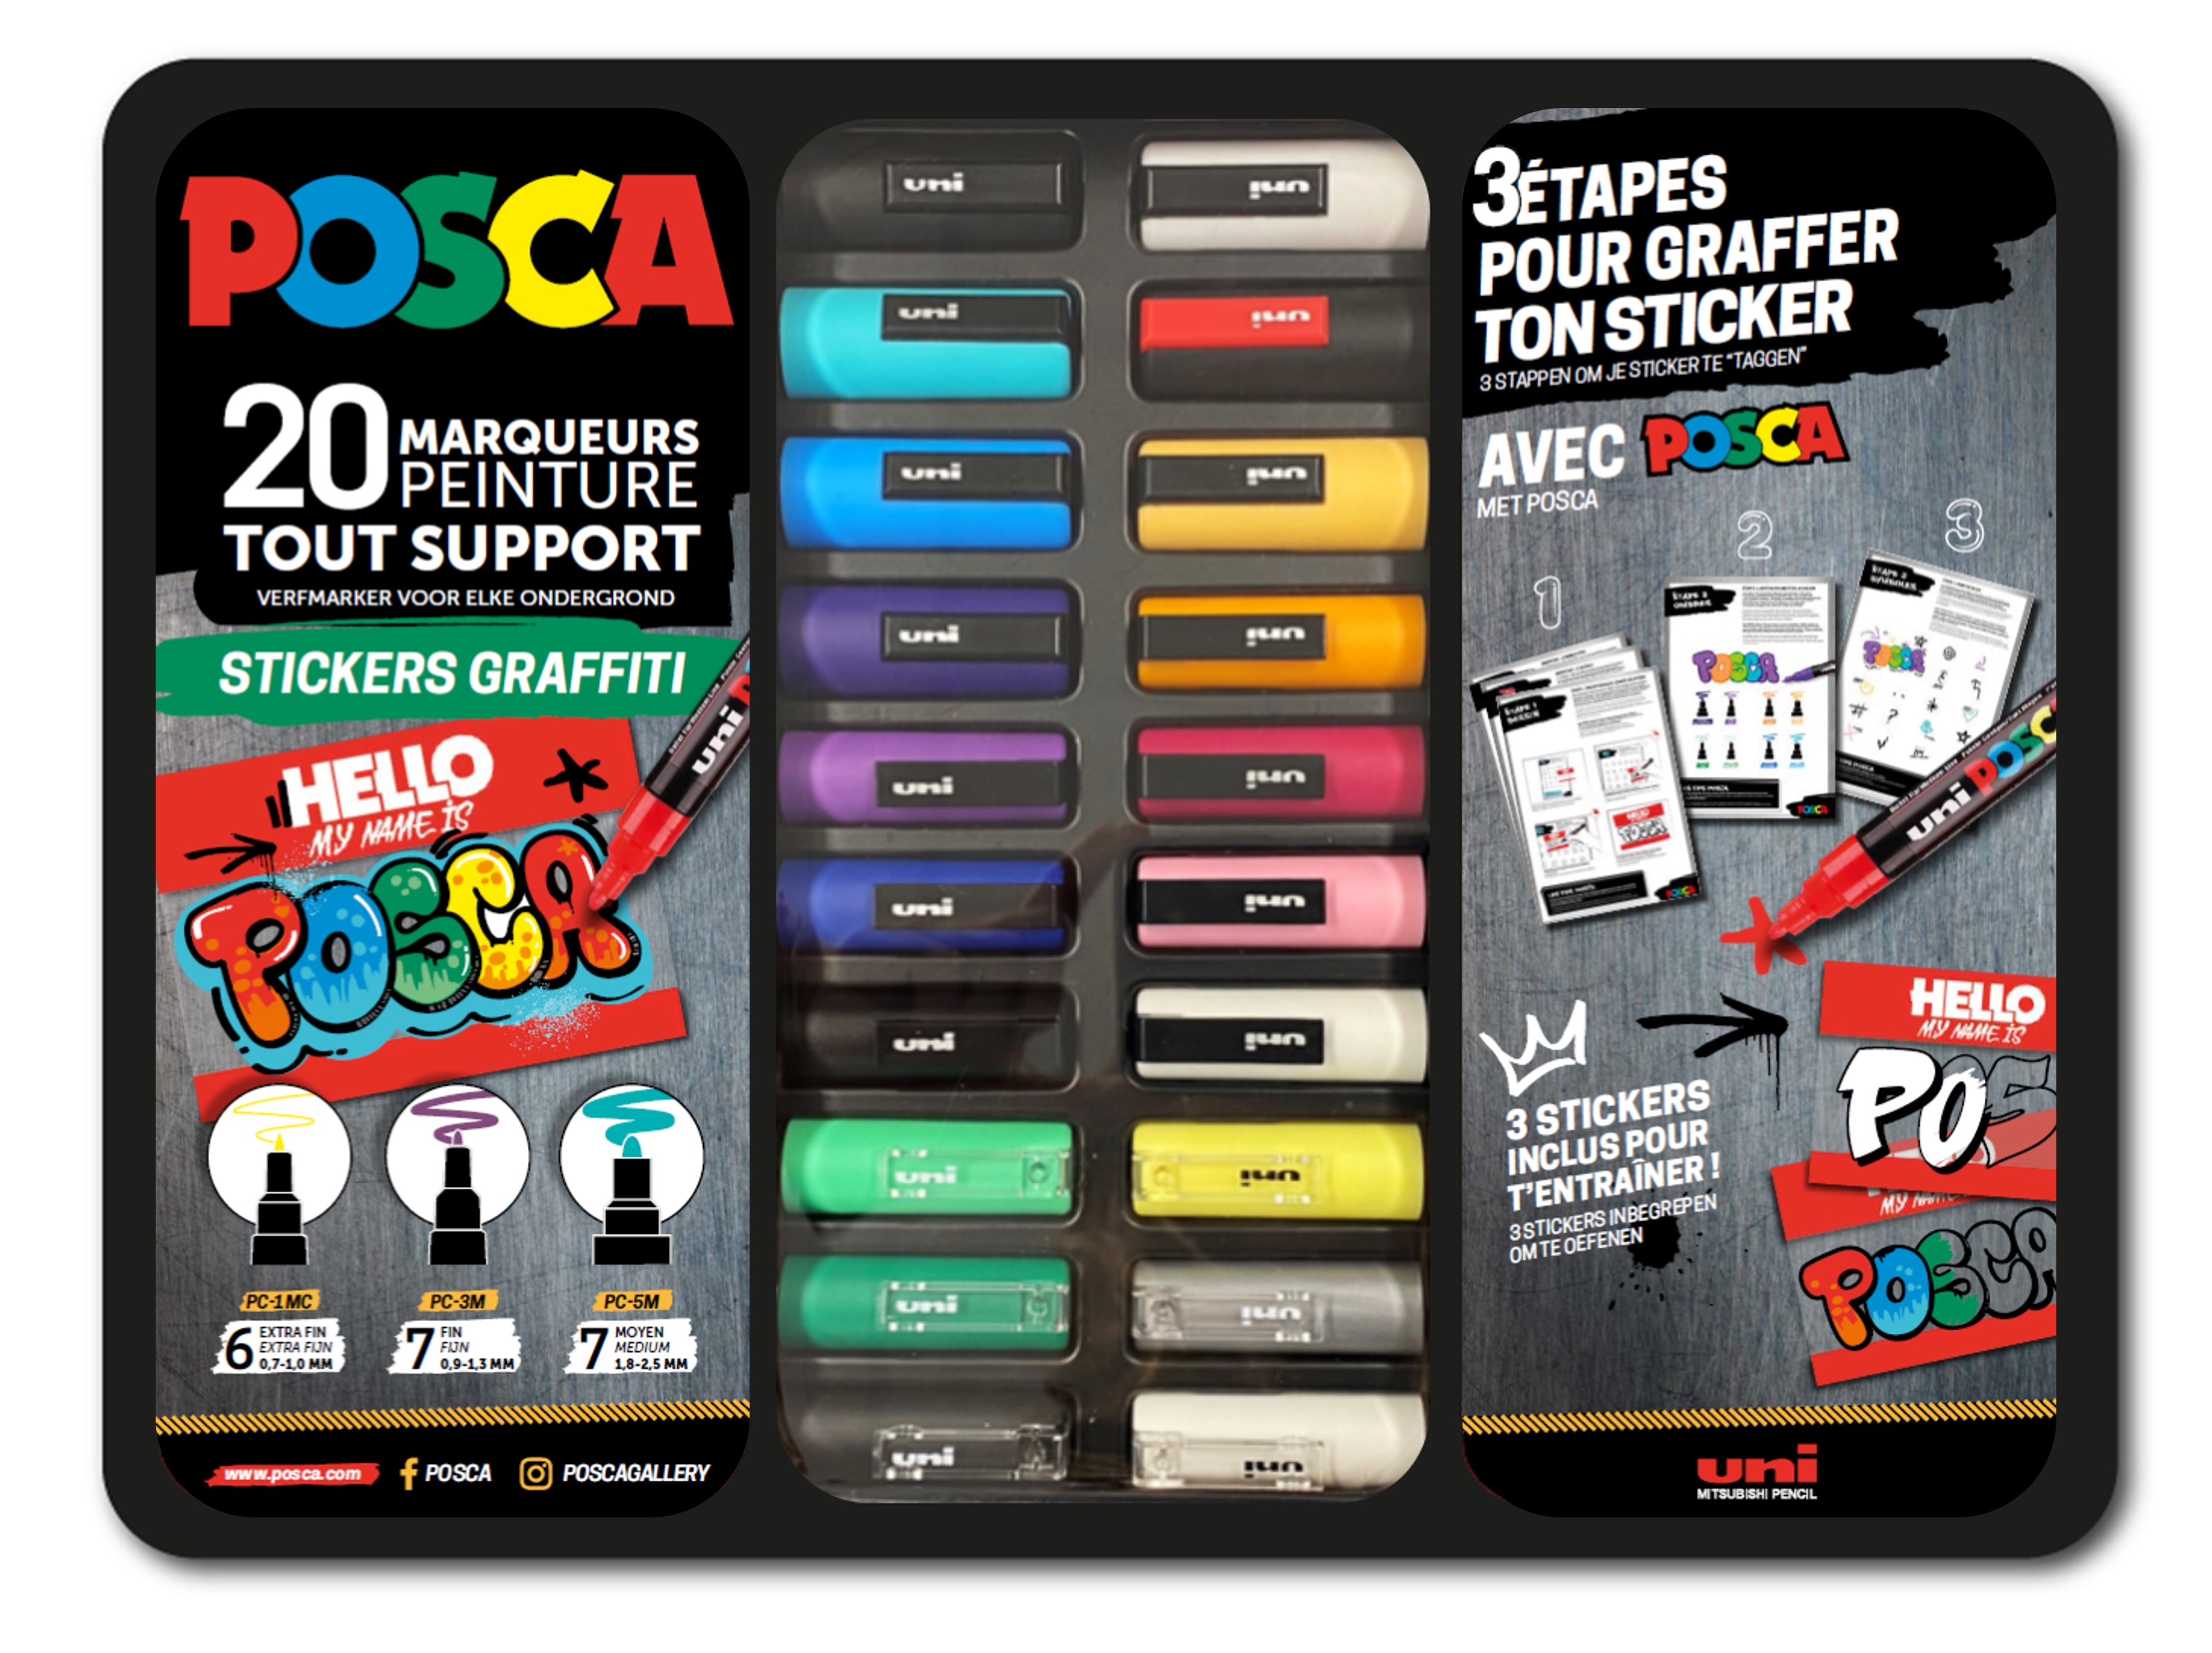 Posca - Pack de 20 marqueurs - pointes et couleurs assorties